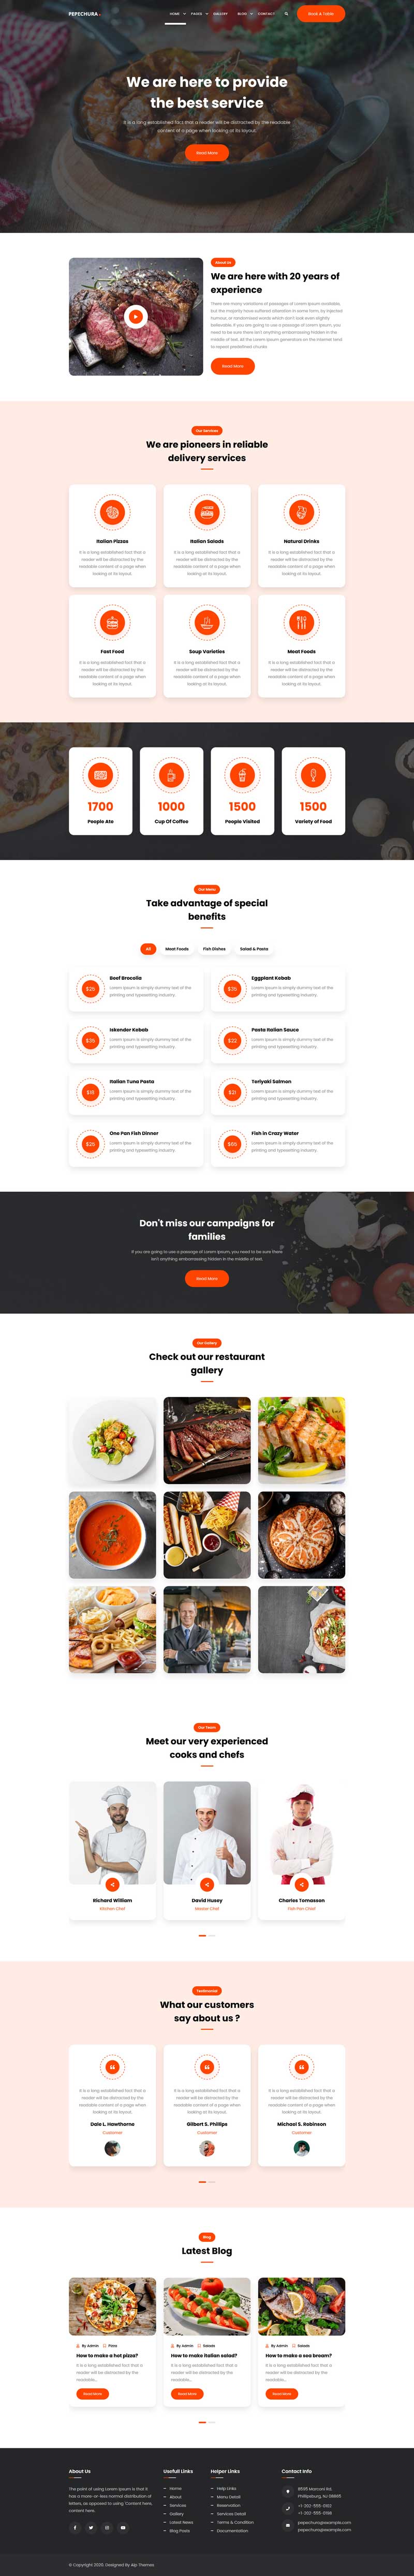 西式餐厅美食图片展示HTML模板